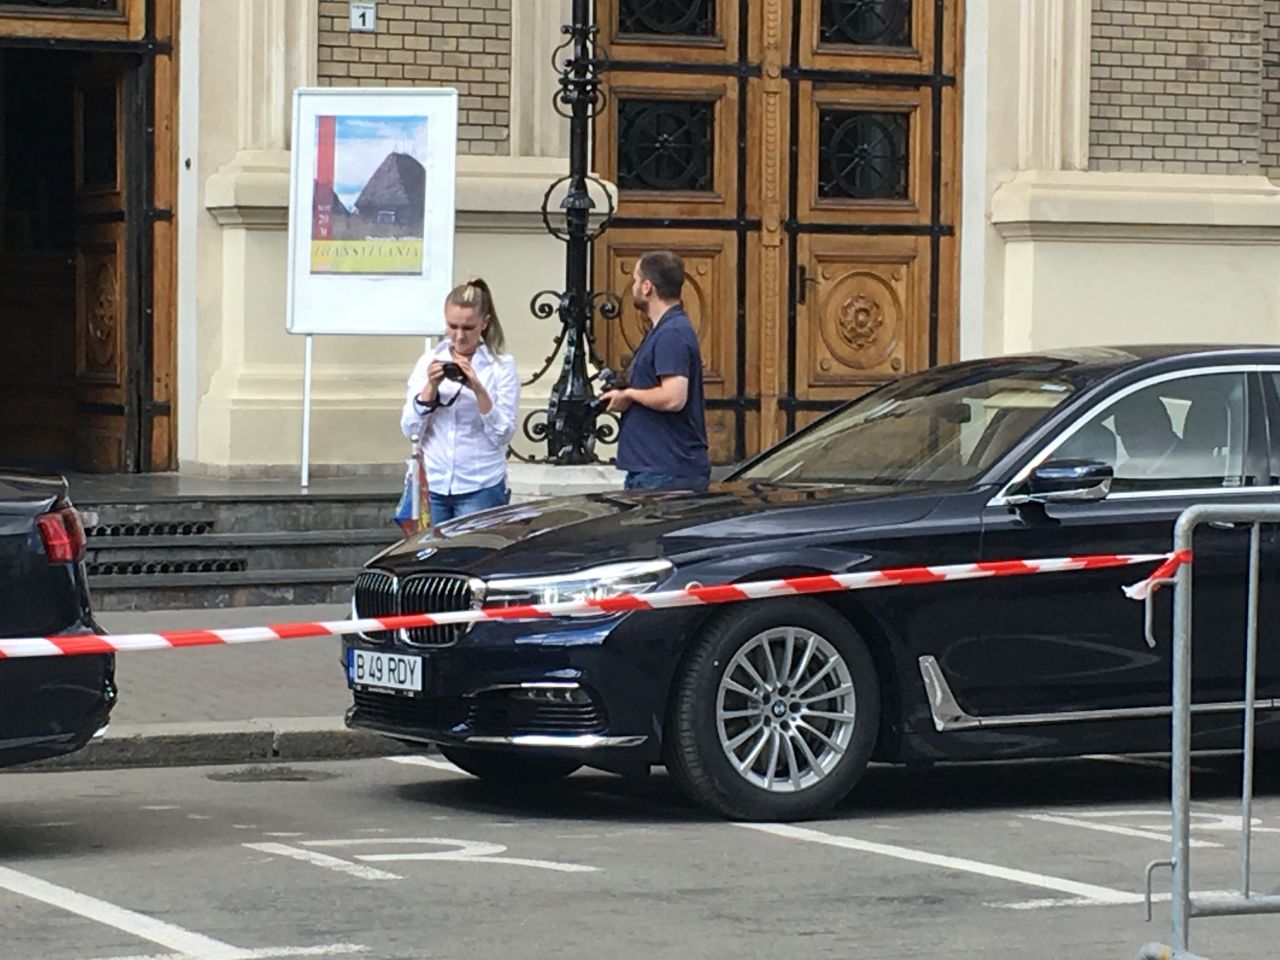 Coincidenţă: Moştenitorul familiei Rhedey a sosit la Cluj cu o maşină cu număr de înmatriculare RDY